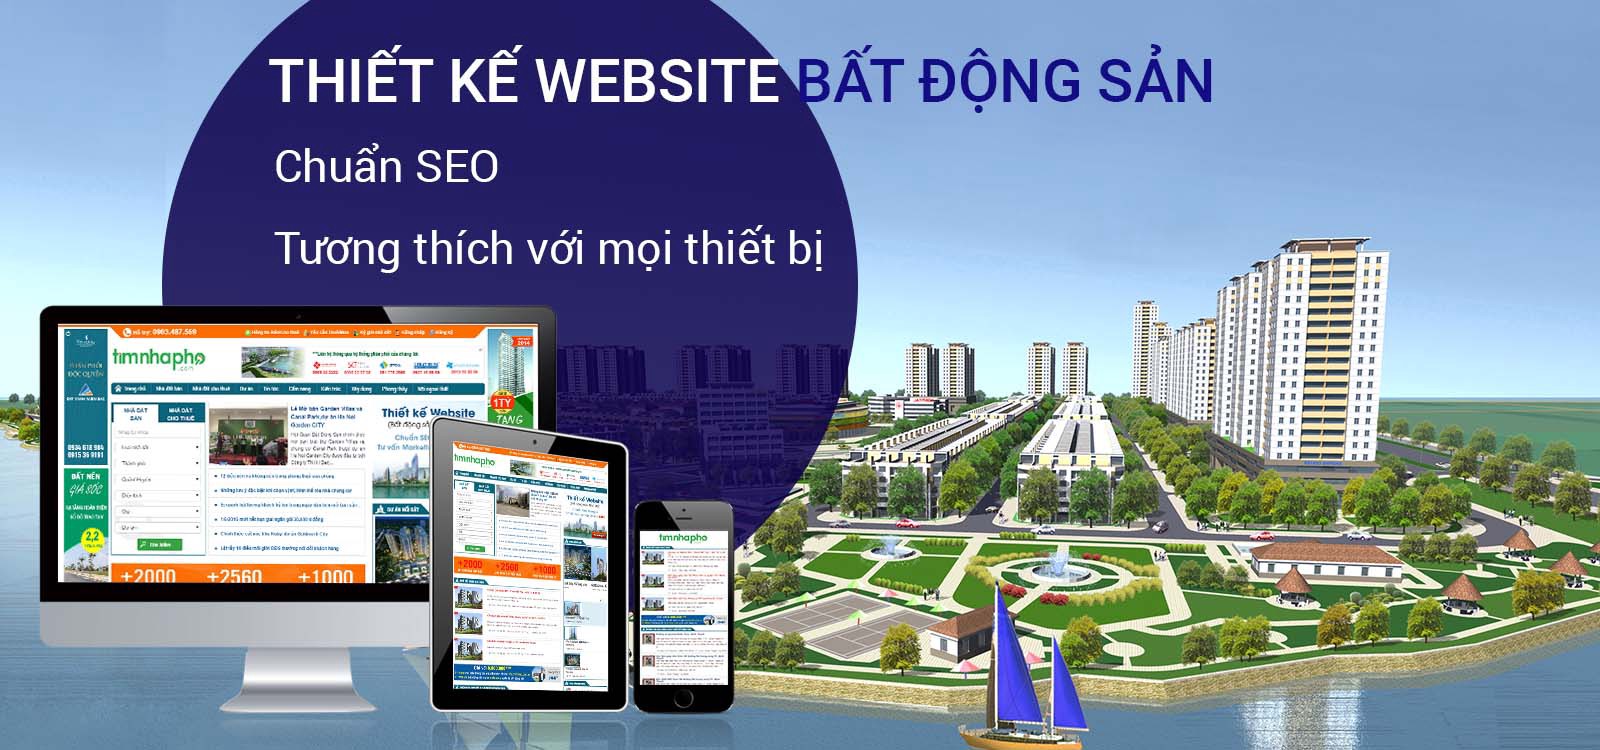 Thiết kế website bất động sản Vinh